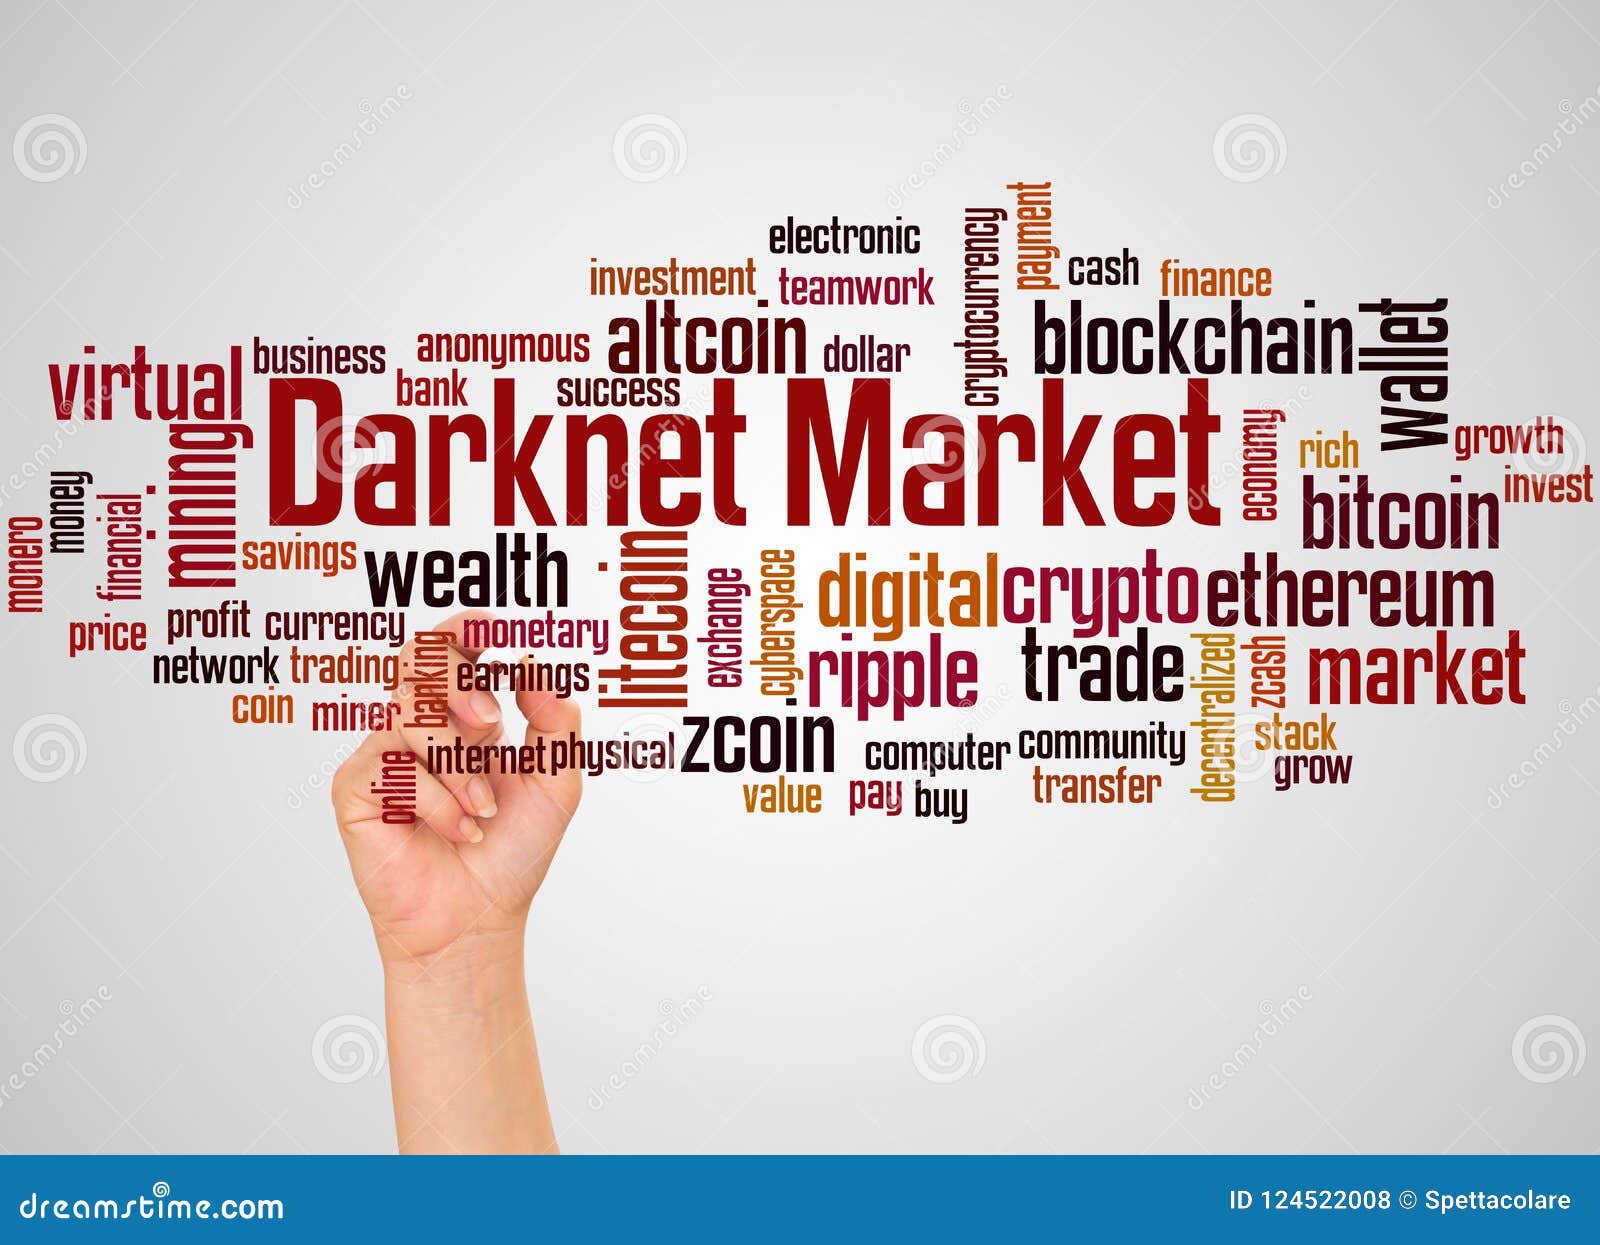 How To Darknet Market